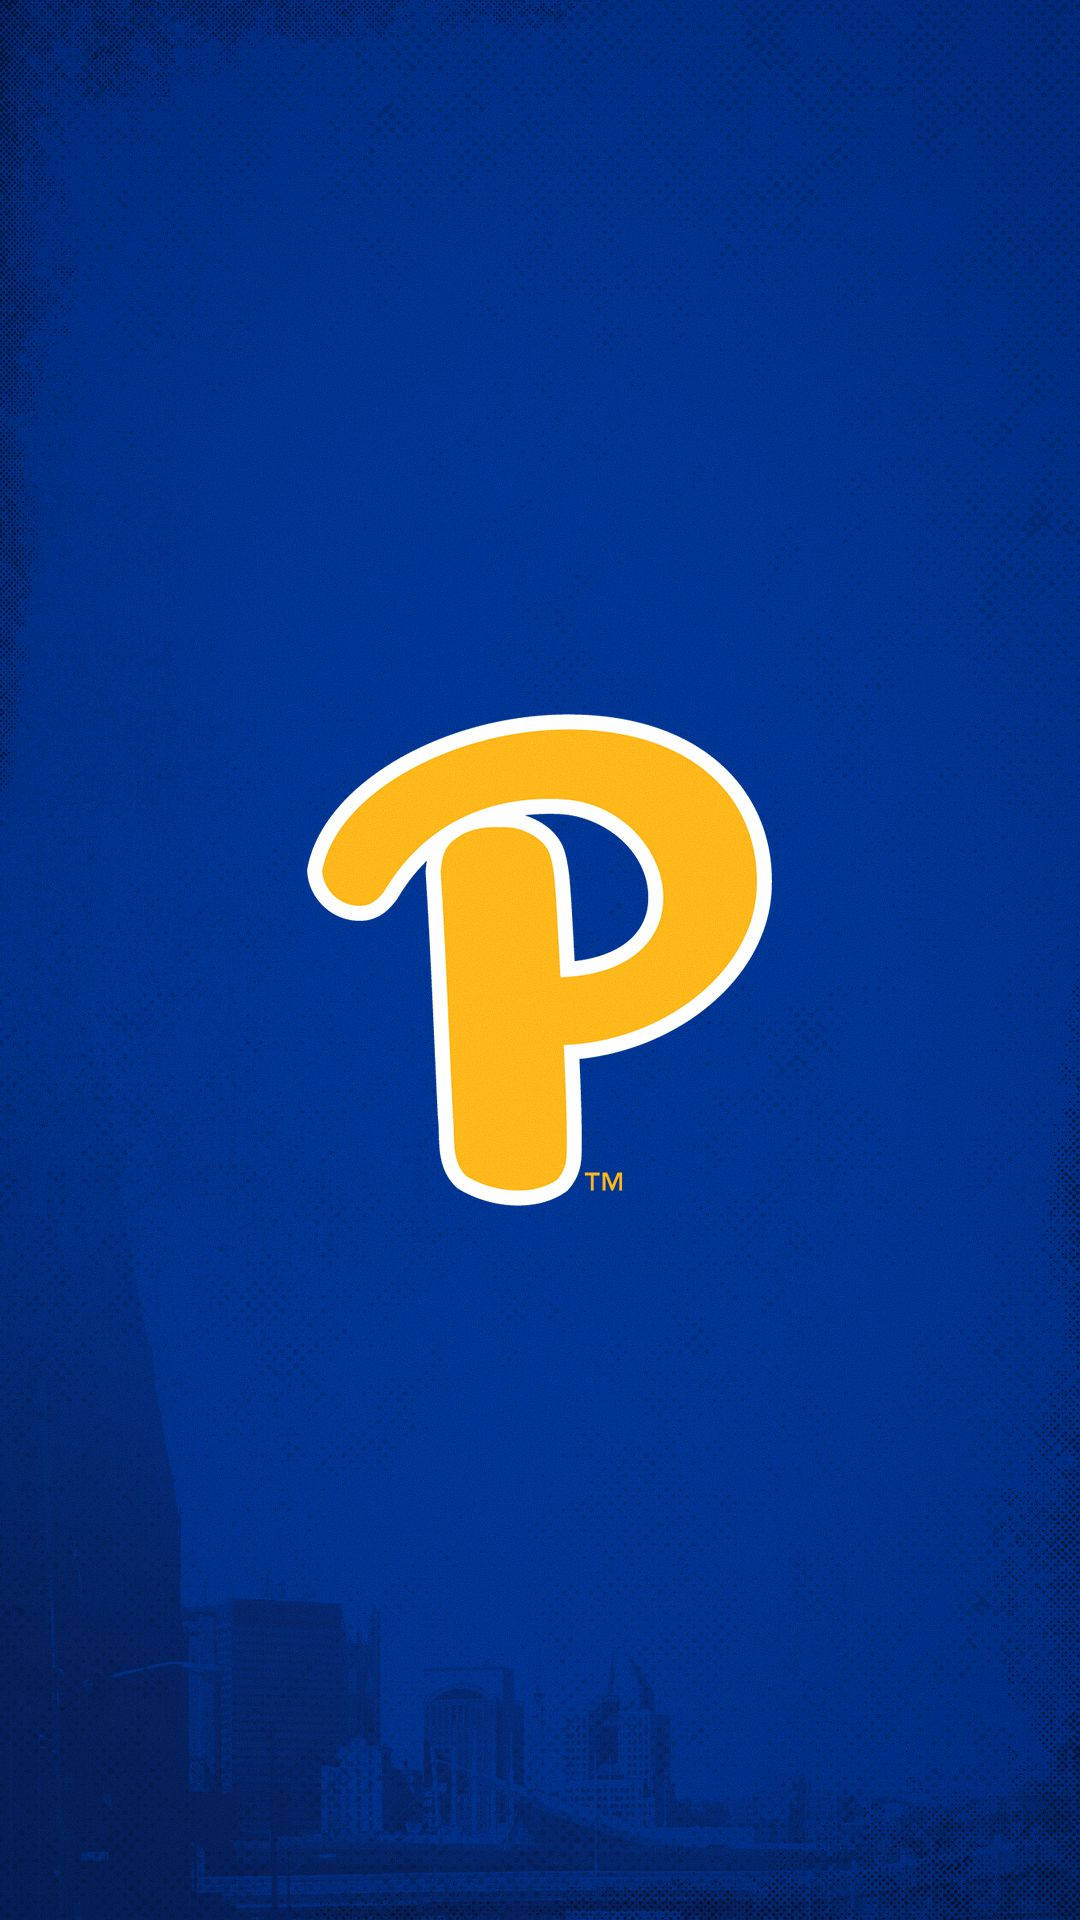 University Of Pittsburgh Letter P Wallpaper